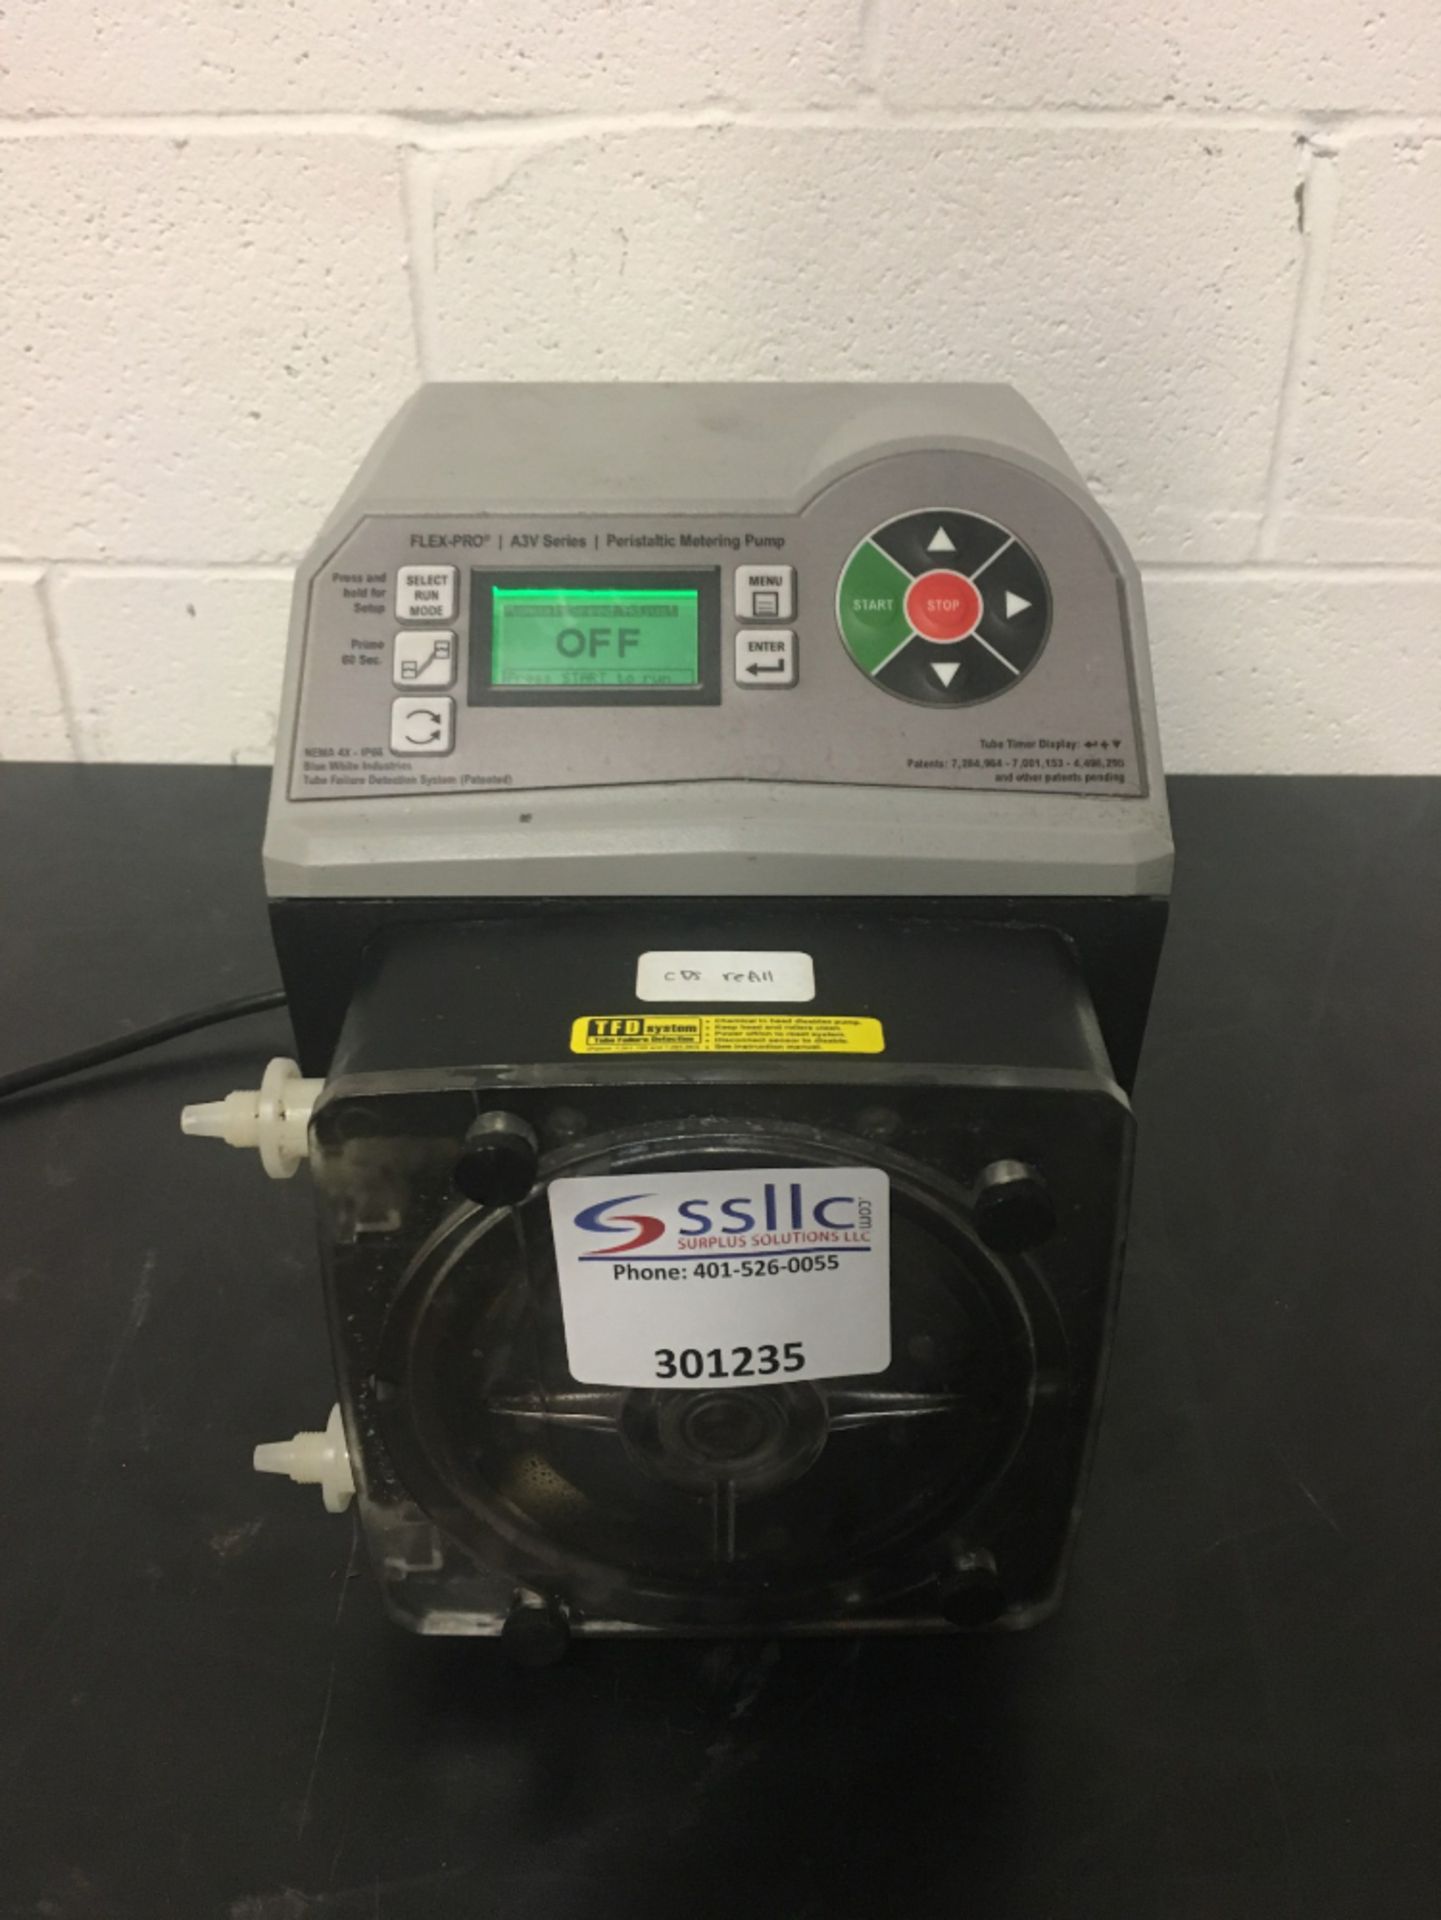 Flex Pro A3 Series Peristaltic Metering Pump